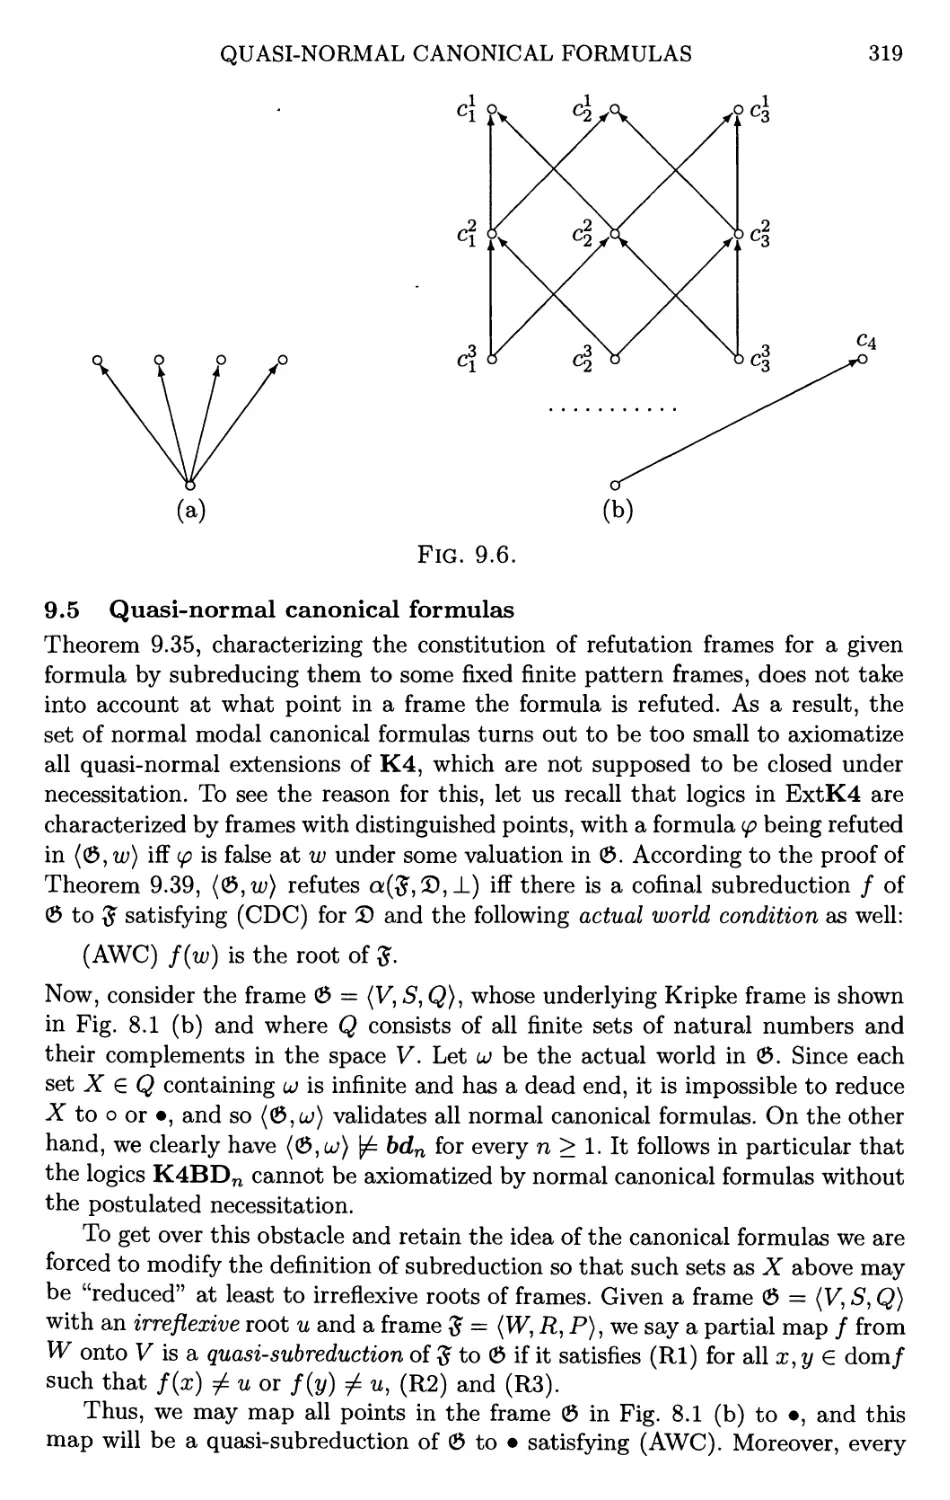 9.5 Quasi-normal canonical formulas